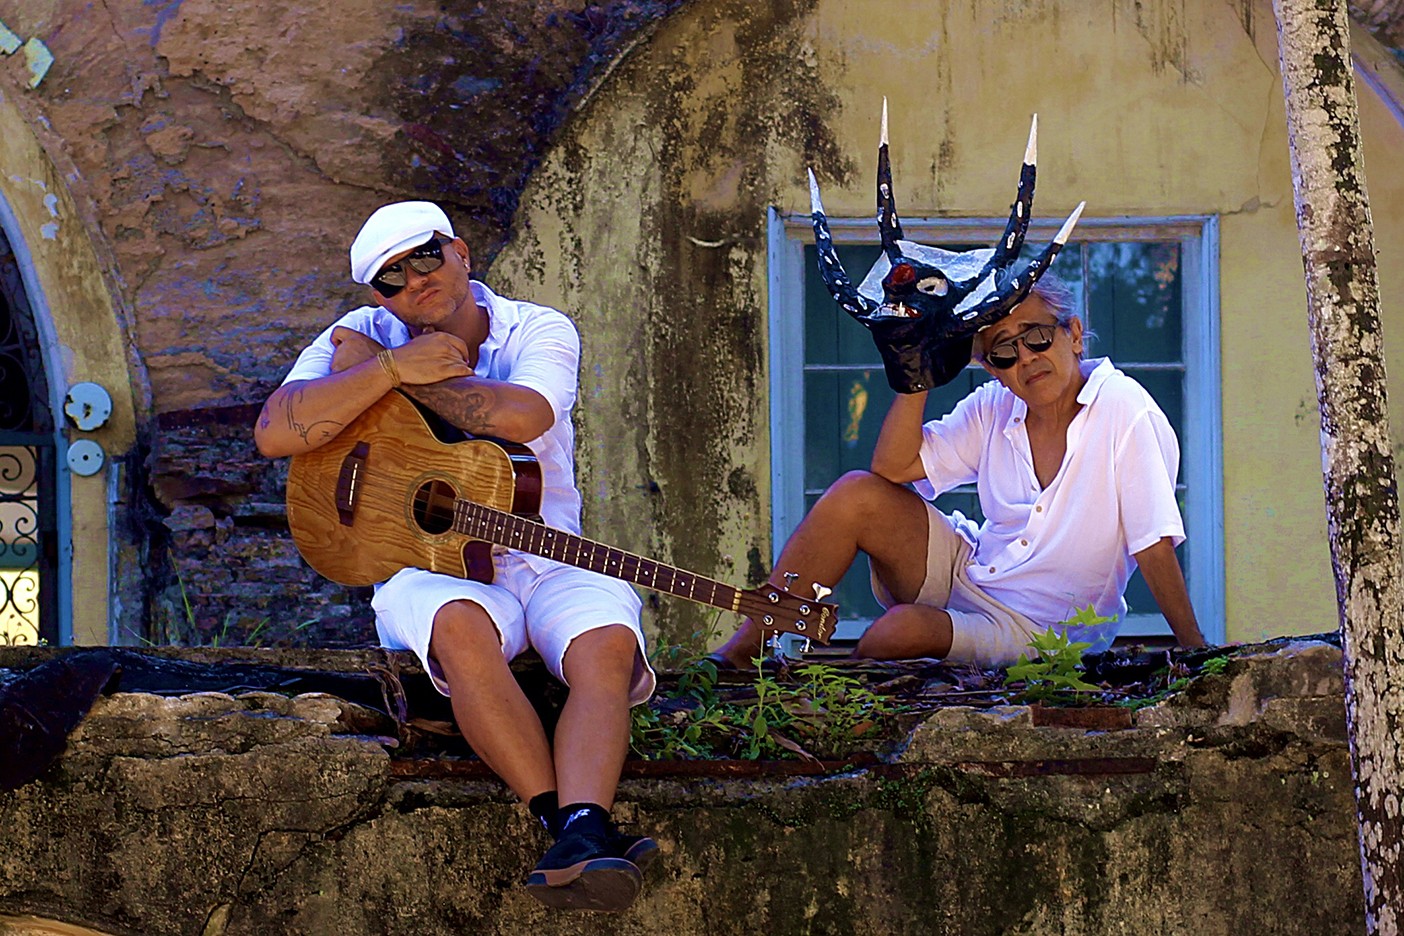 J. Velloso e Recôncavo Experimental põem guitarras e beats na grande roda do samba da Bahia em álbum autoral